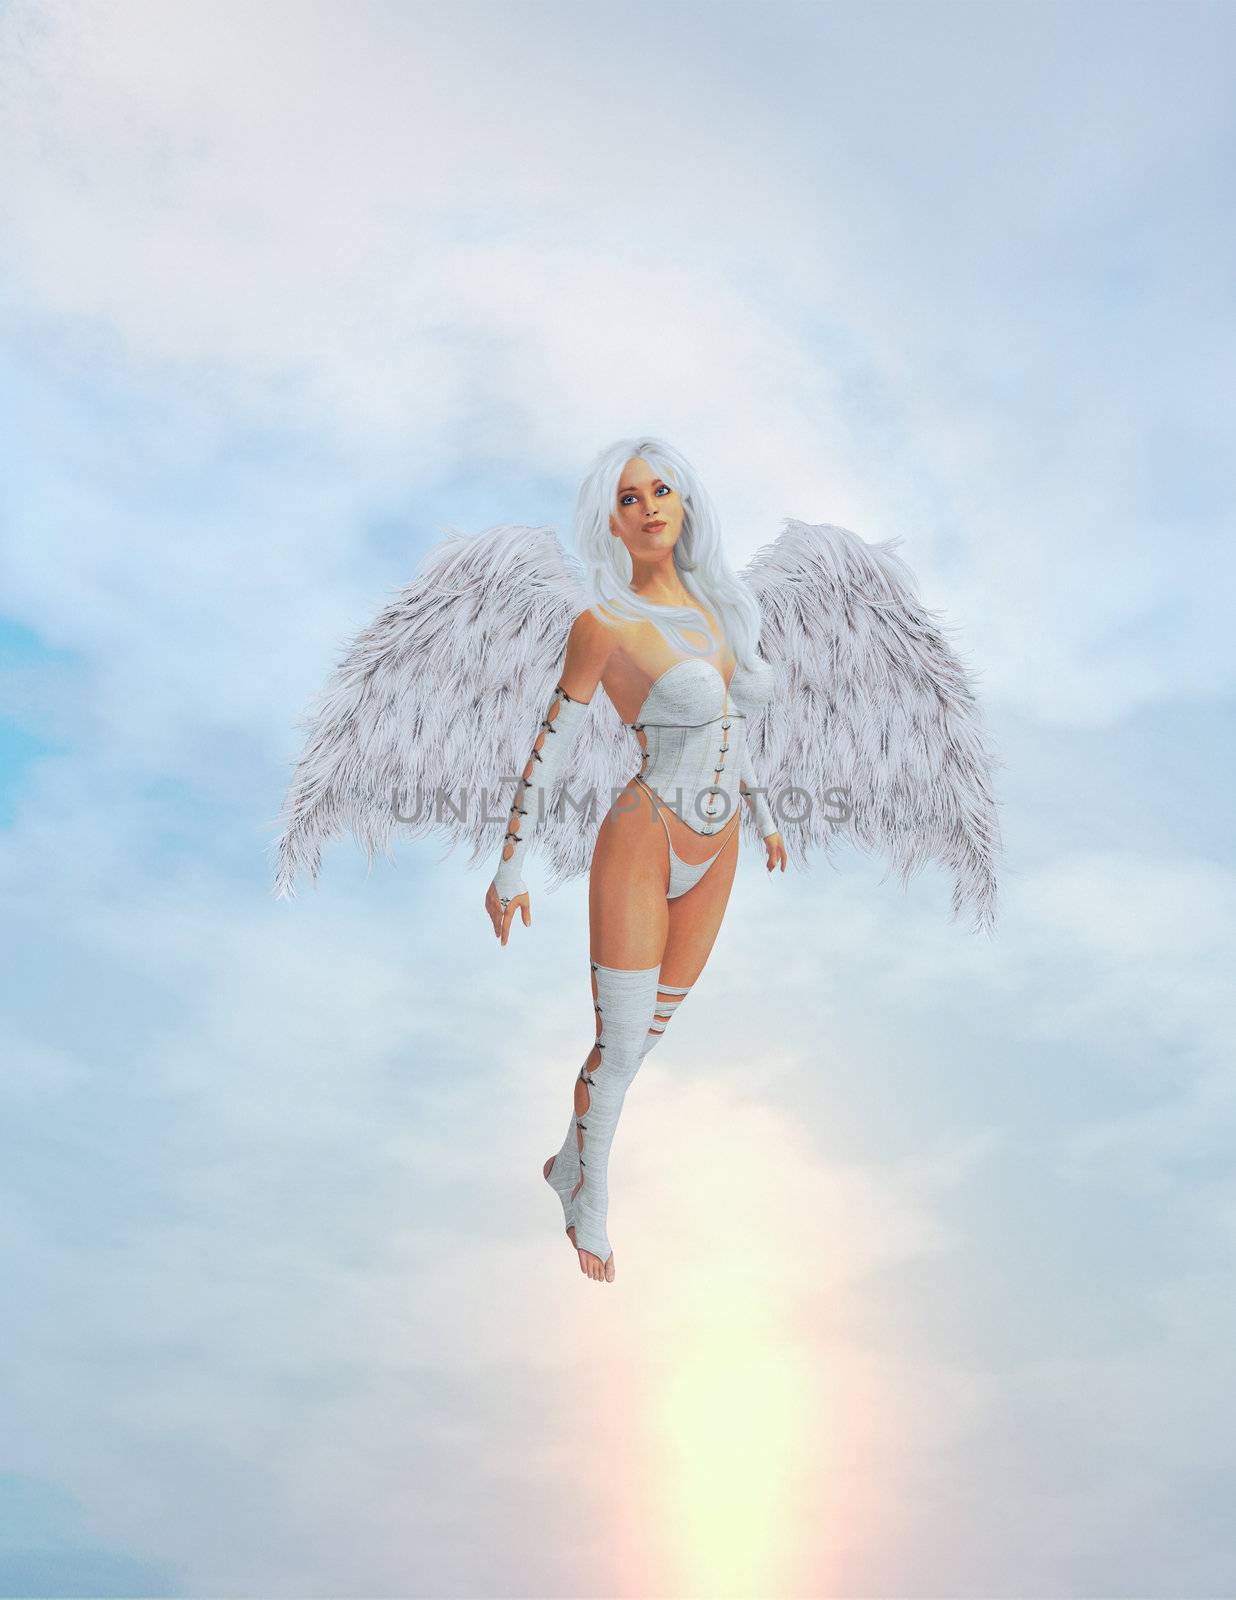 Angel in mid flight